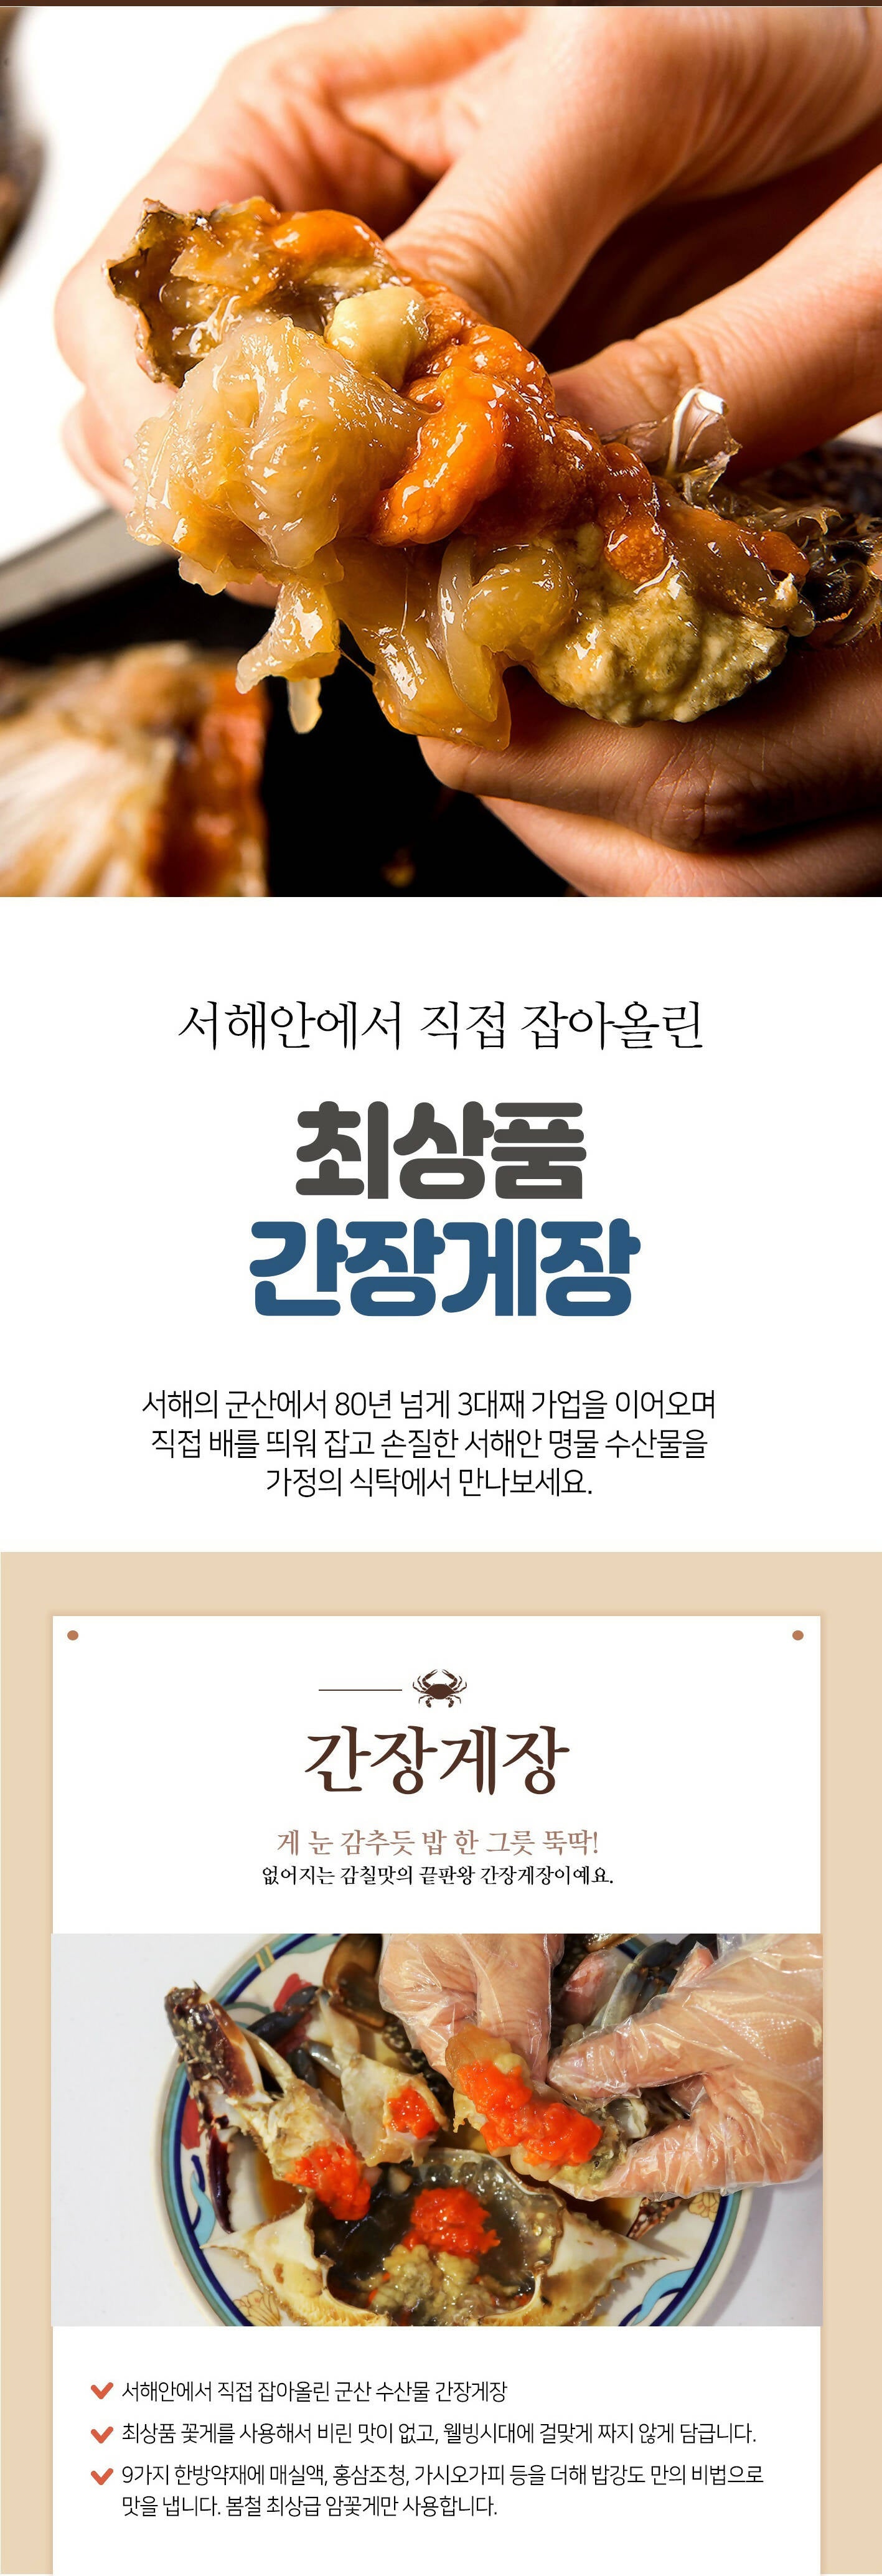 [고국배송] 최상품 군산 밥강도 암꽃게 간장게장